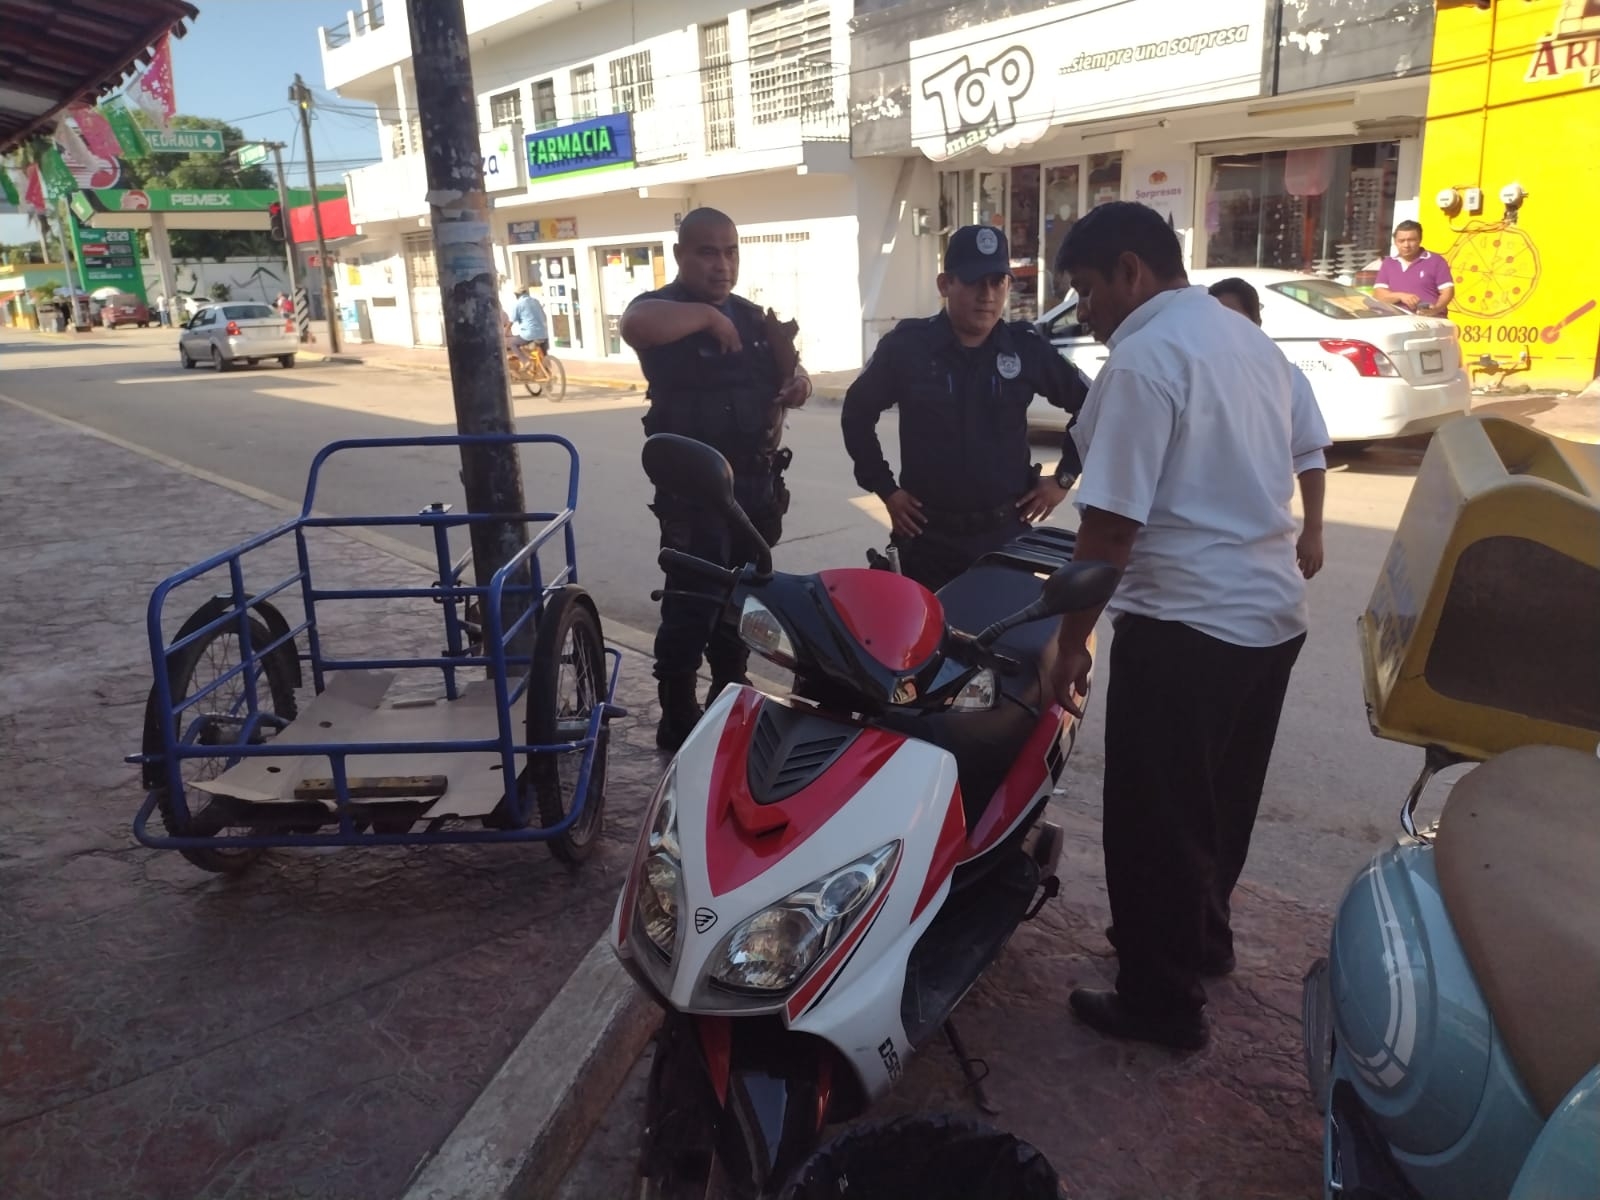 La motocicleta de una mujer fue confundida por otro conductor, quien se la llevó pensando que era la suya en Carrillo Puerto